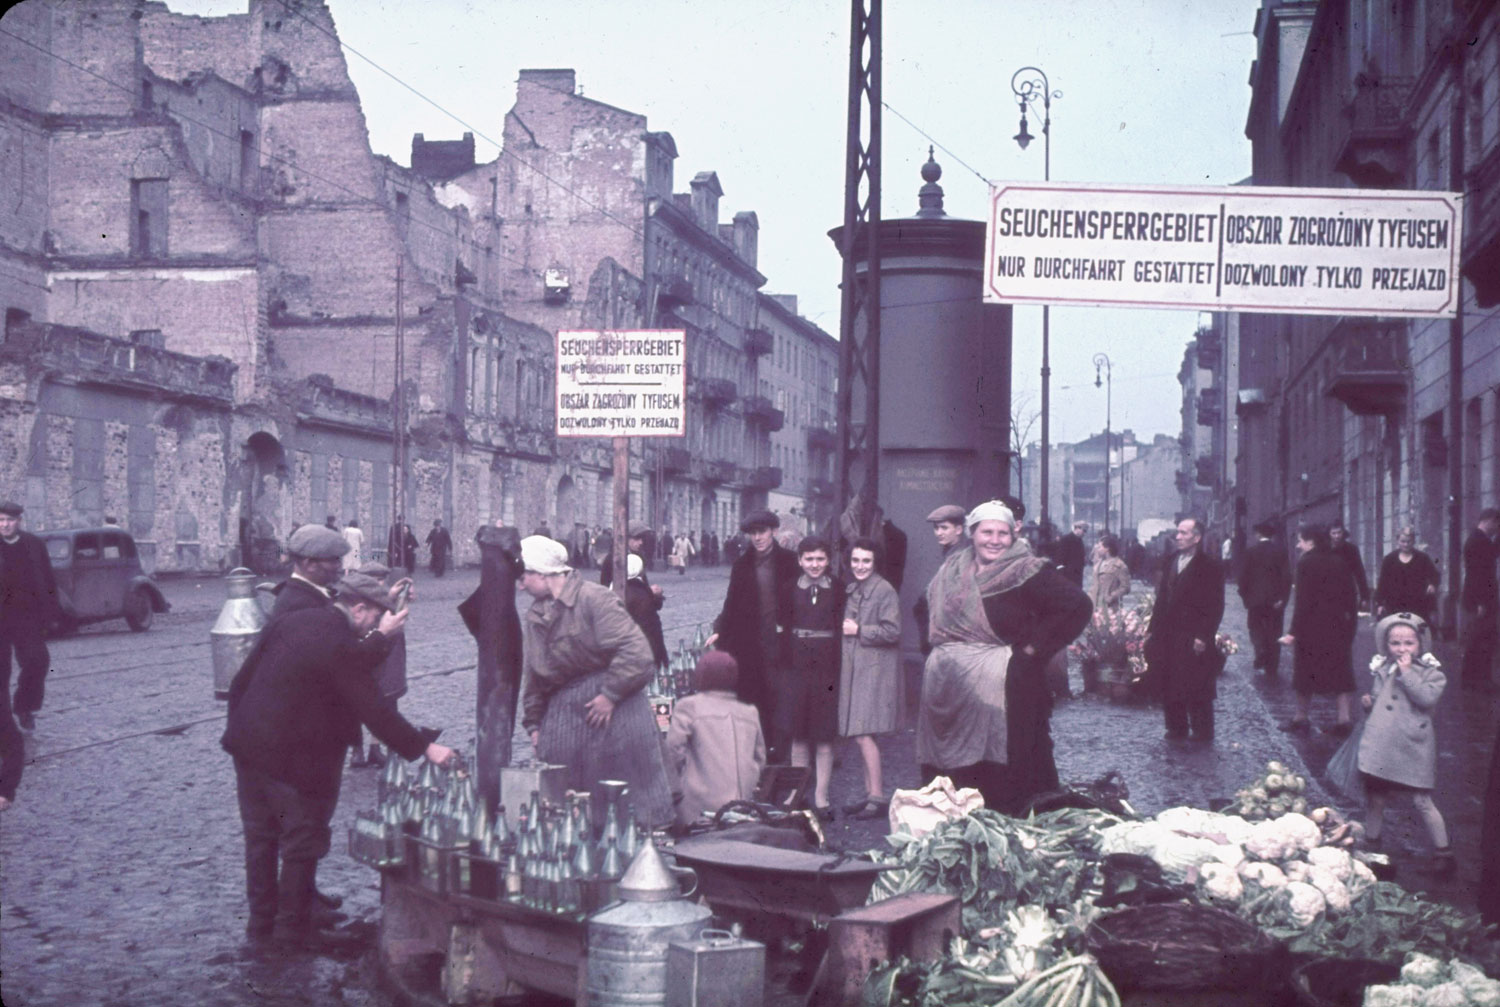 Warsaw, Nazi-occupied Poland, 1940.